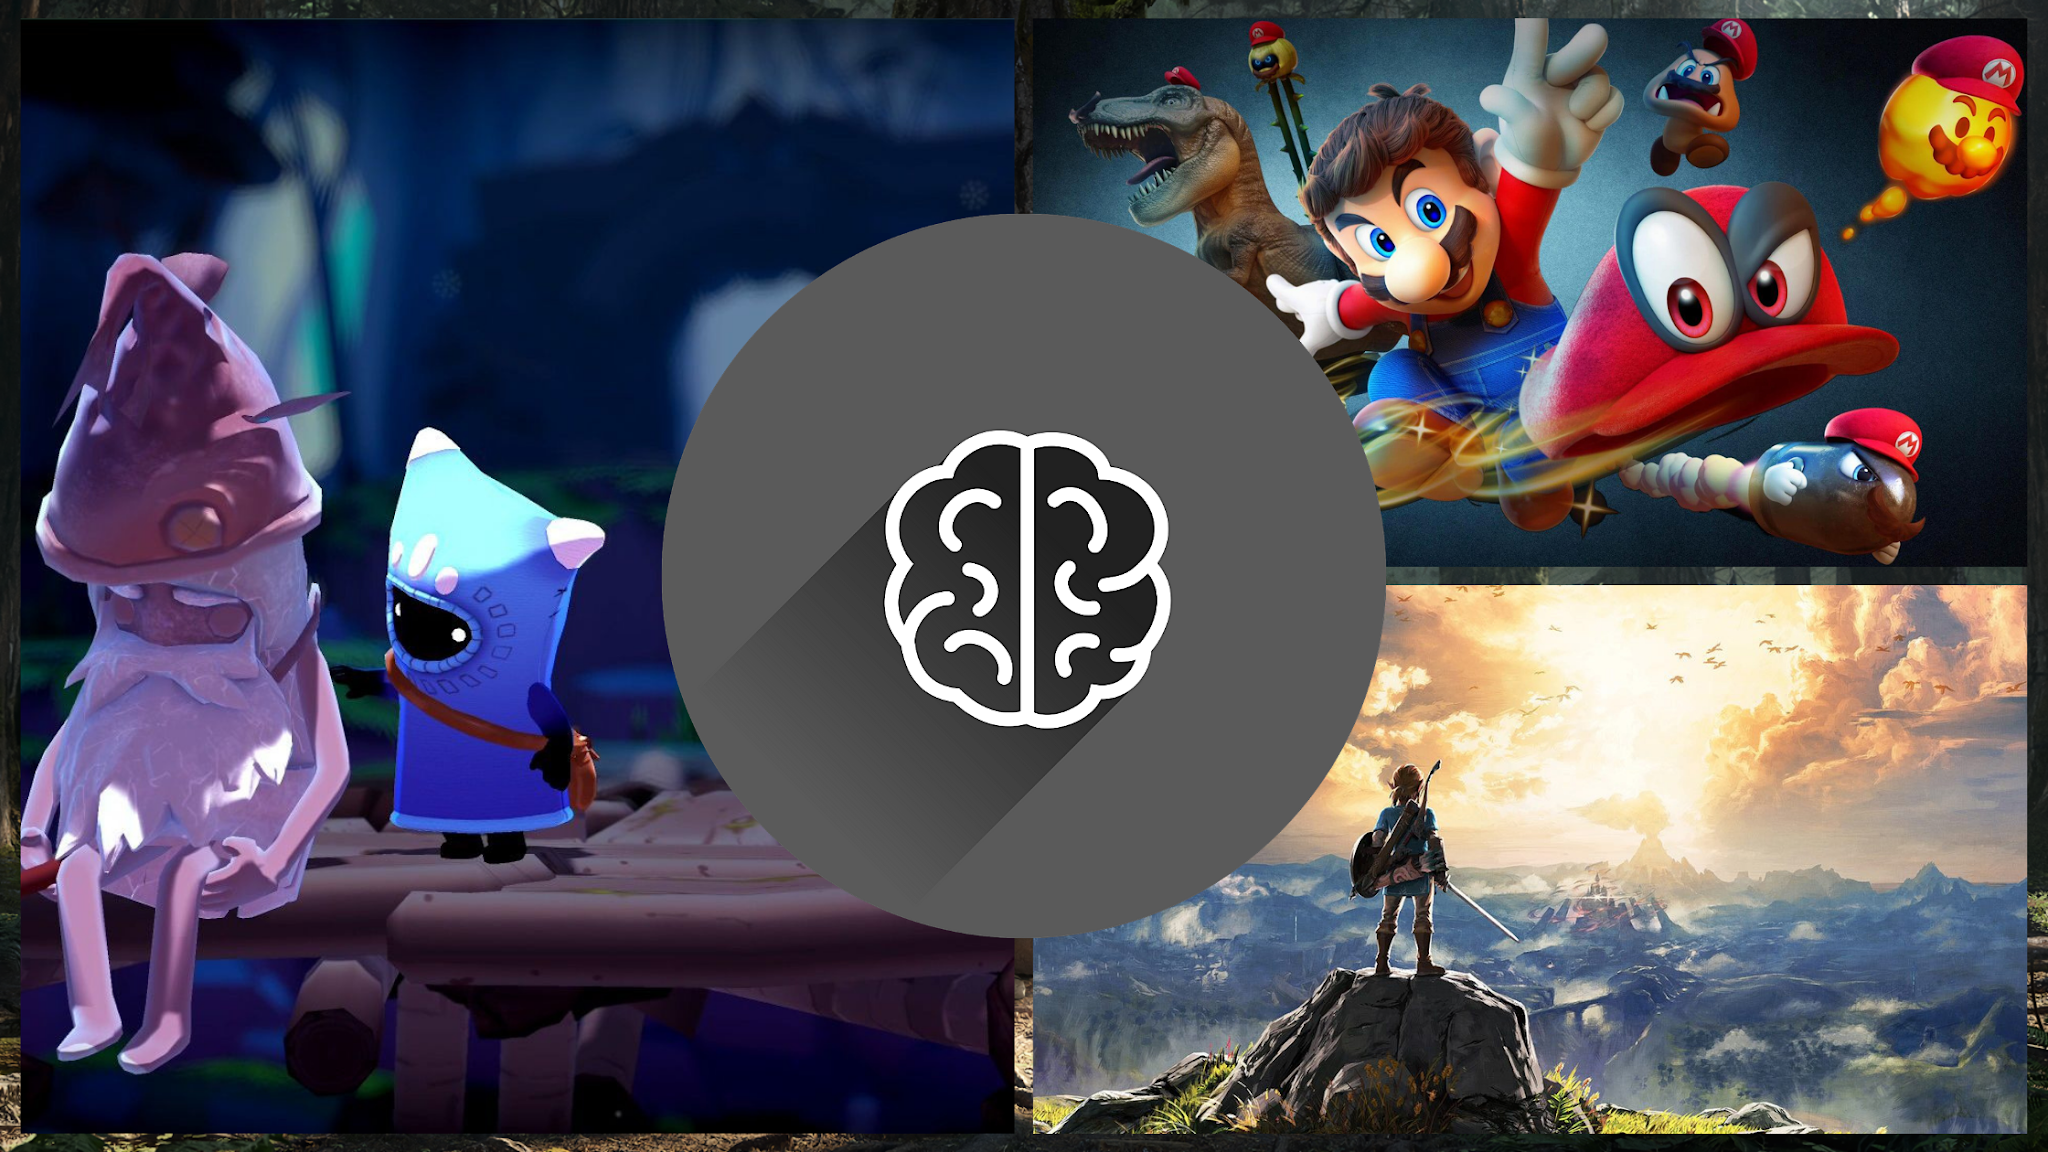 Jogos e a saúde mental: games podem ajudar no combate à depressão